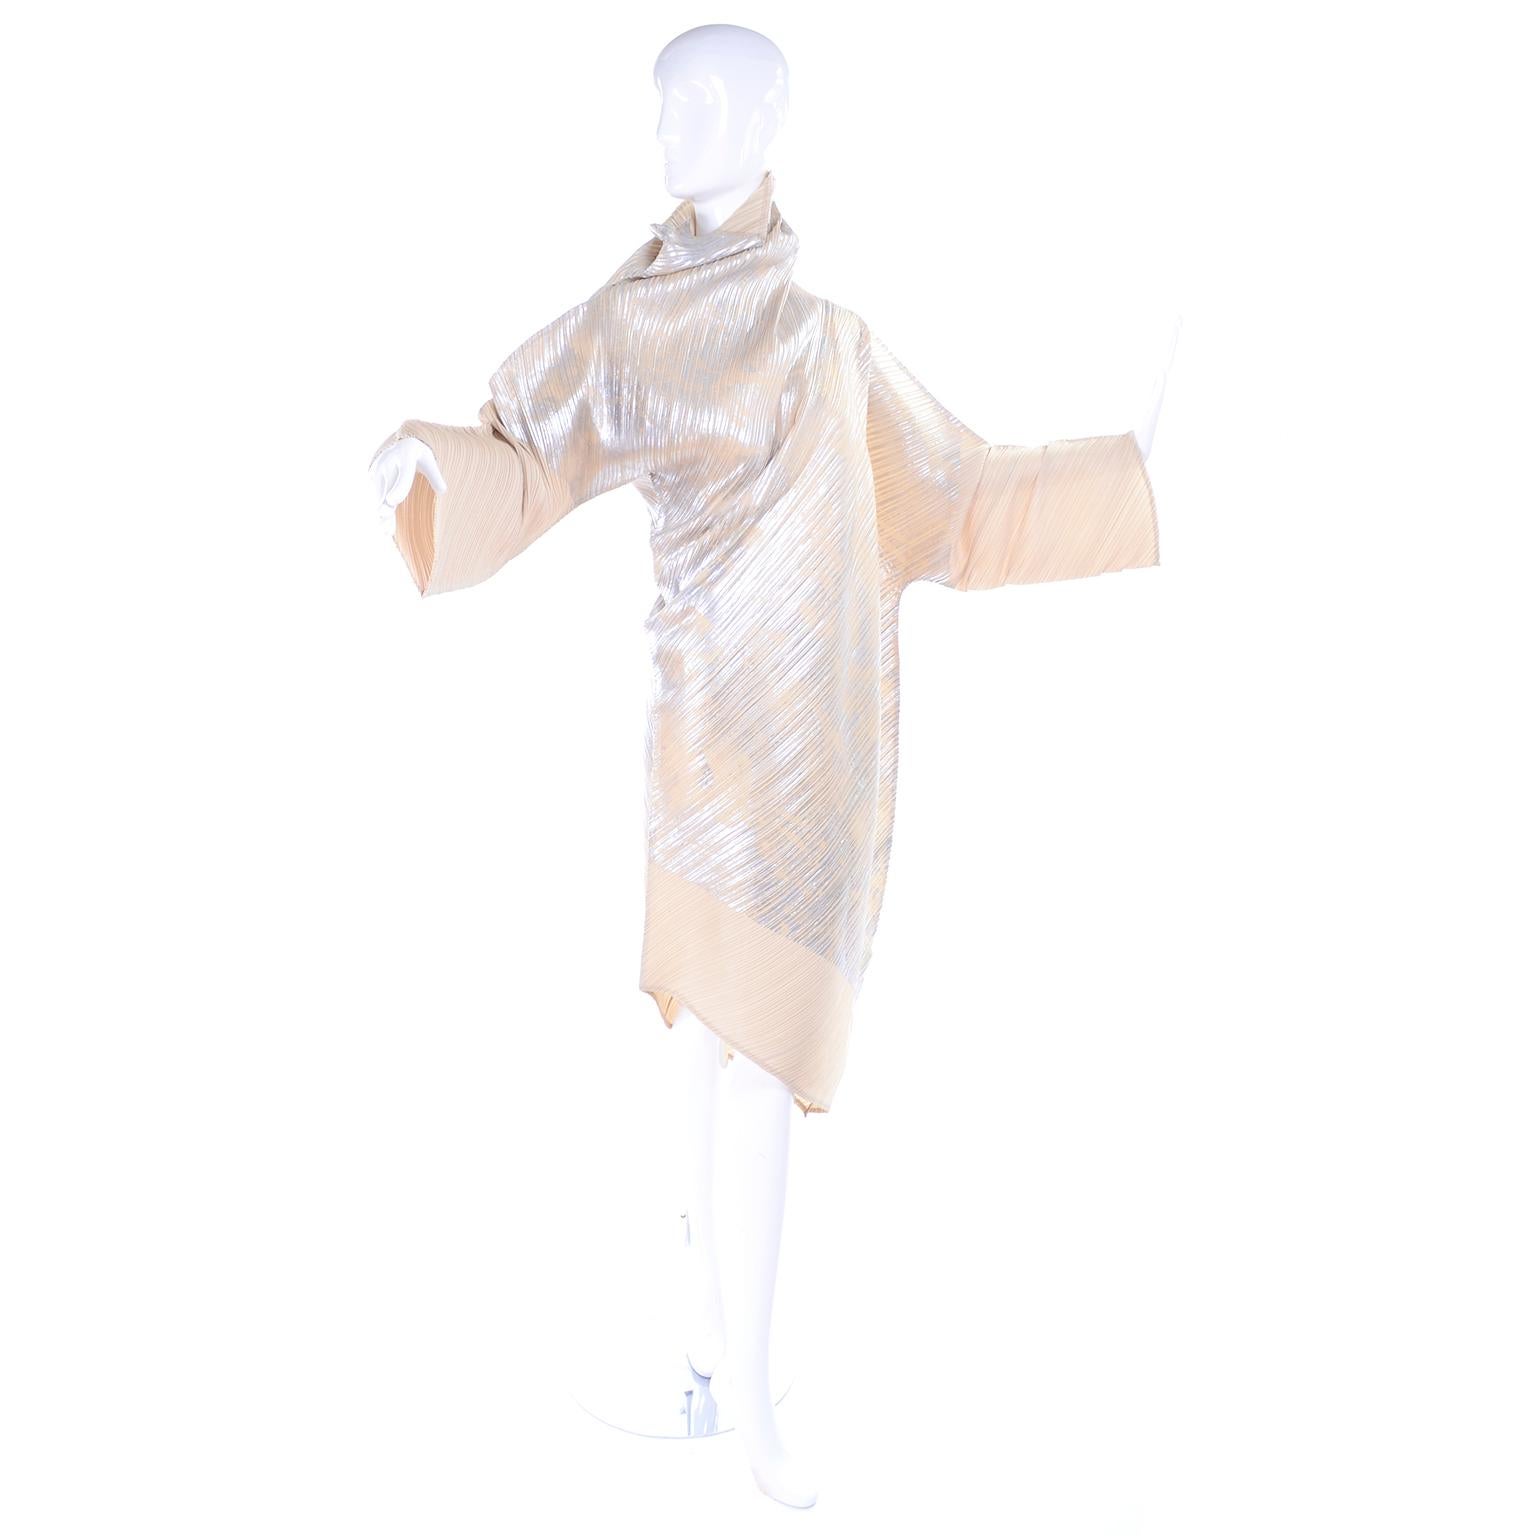 Issey Miyake A/H 1994 Asymmetrisches plissiertes Kleid in Creme & Silber Metallic mit Preisschildern (Beige)